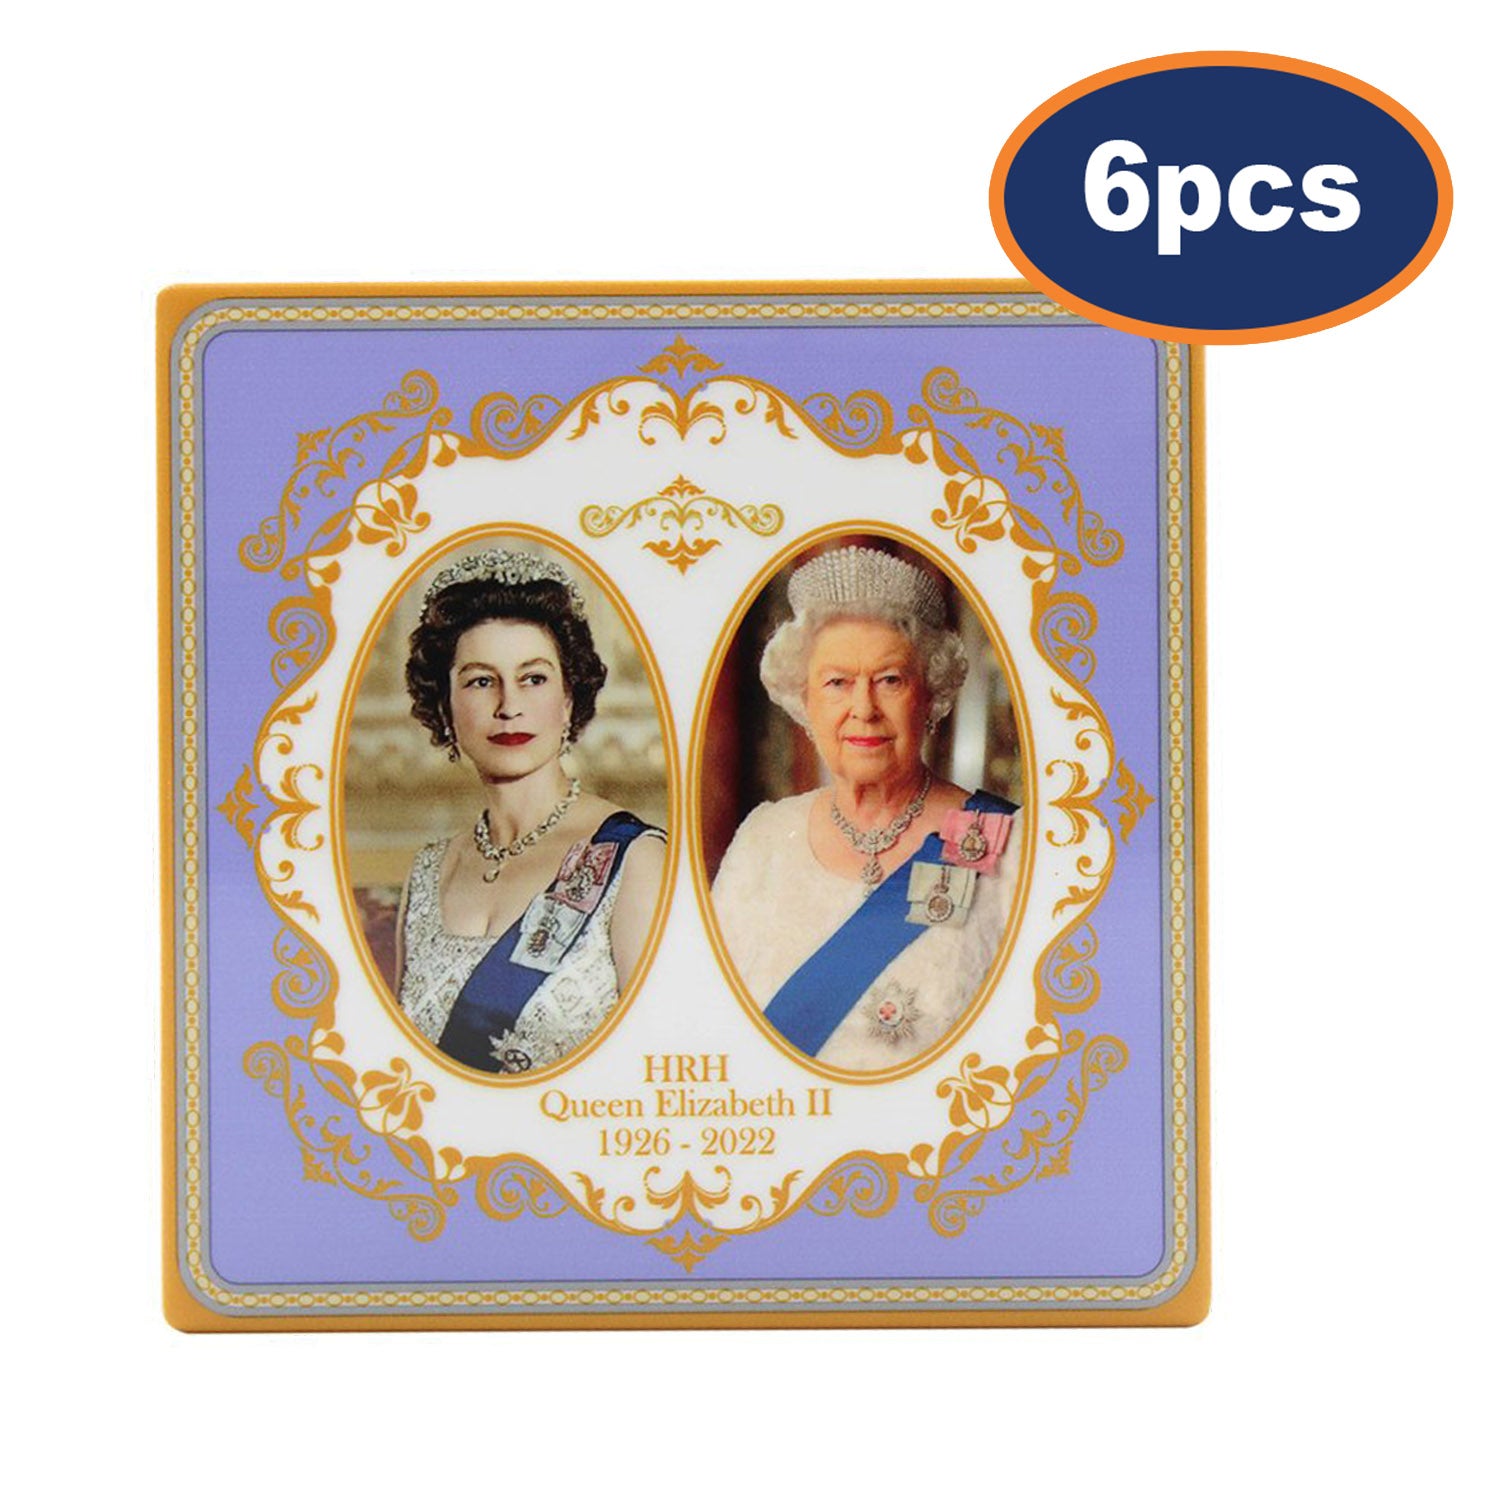 6pcs Queen Elizabeth II Ceramic Coaster